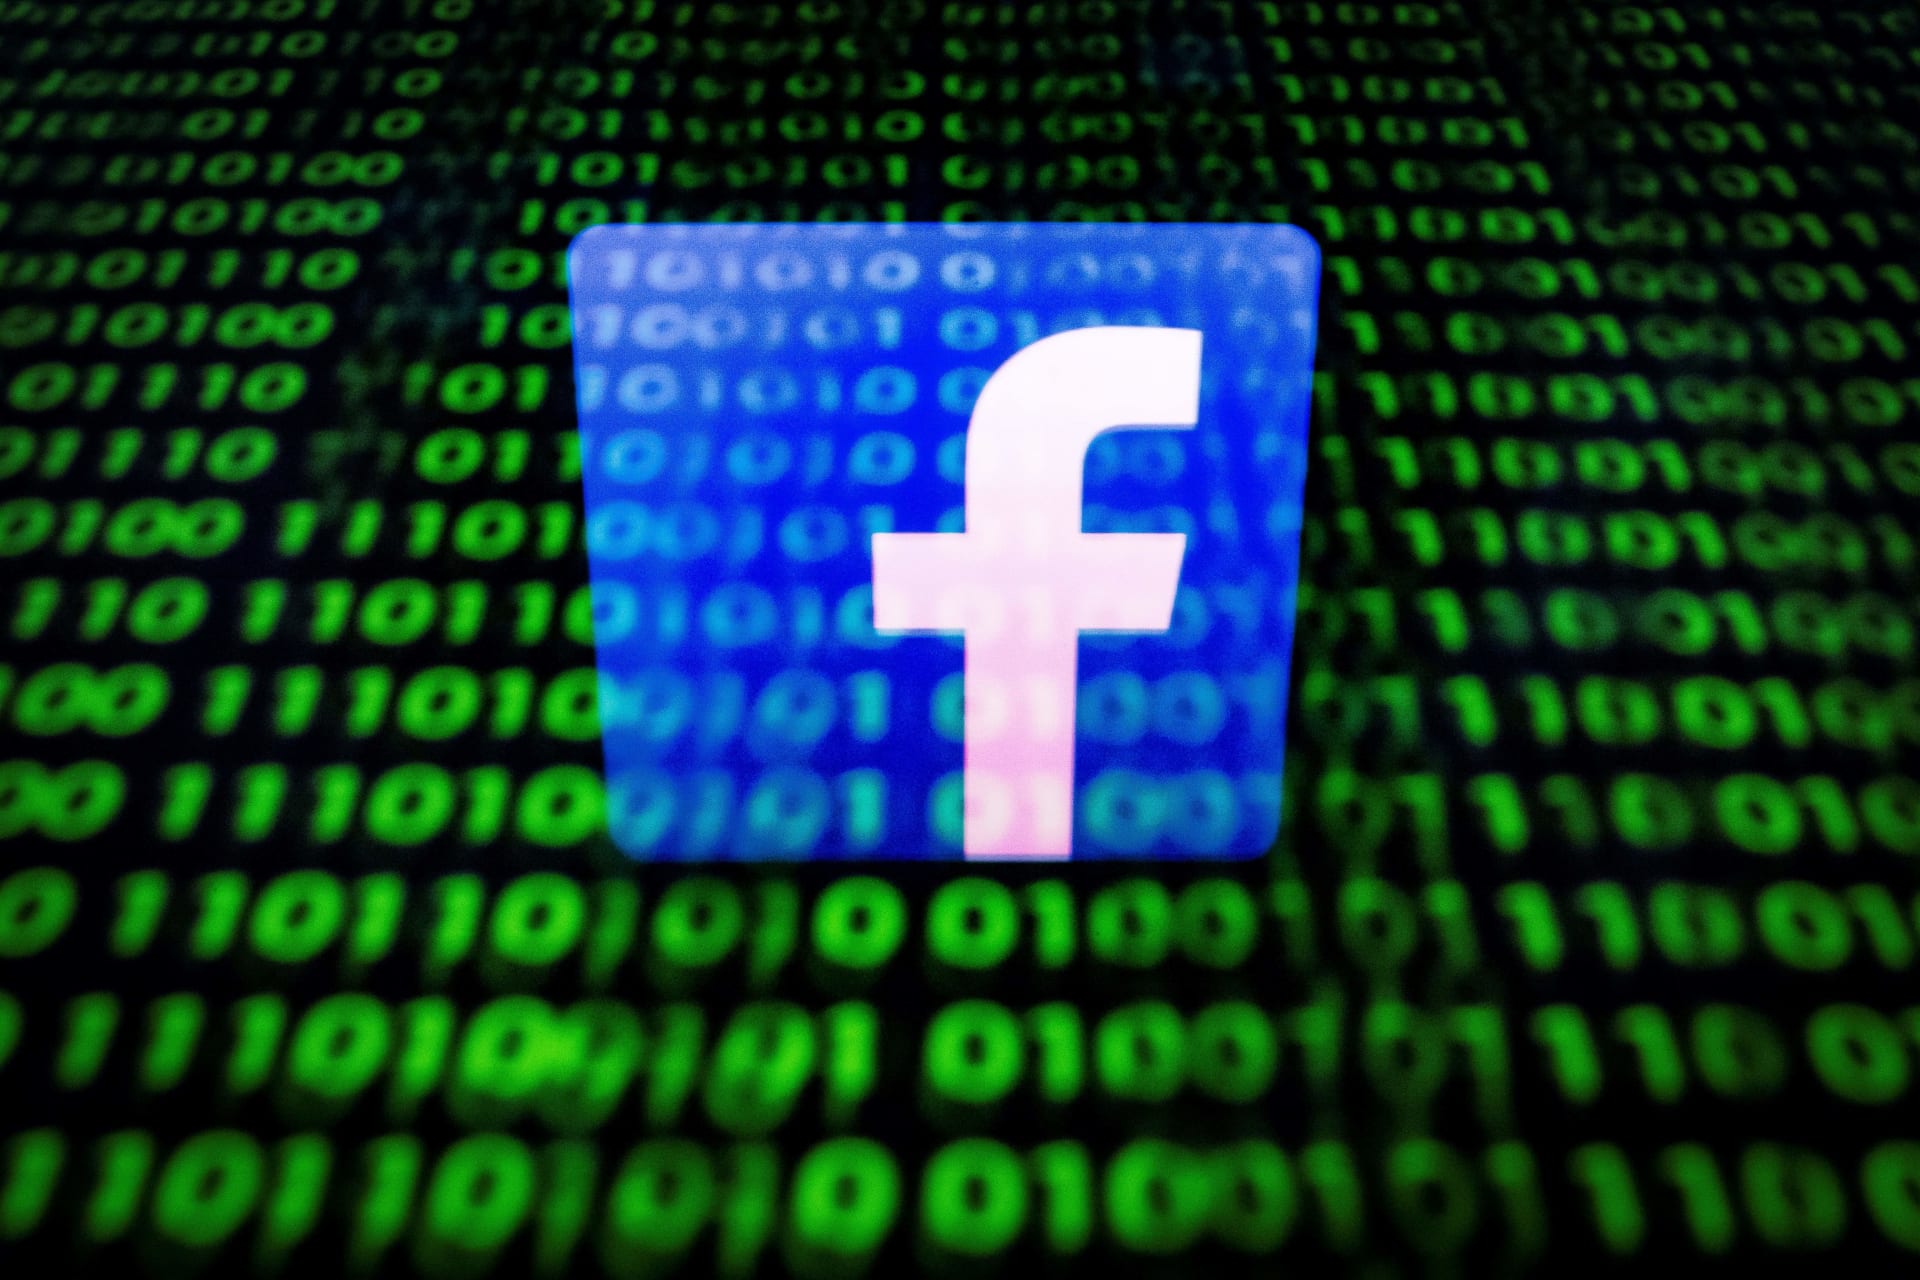 "فيسبوك" تكشف عن شبكة حملات تأثير سرية.. وتربطها بالحكومة السعودية 